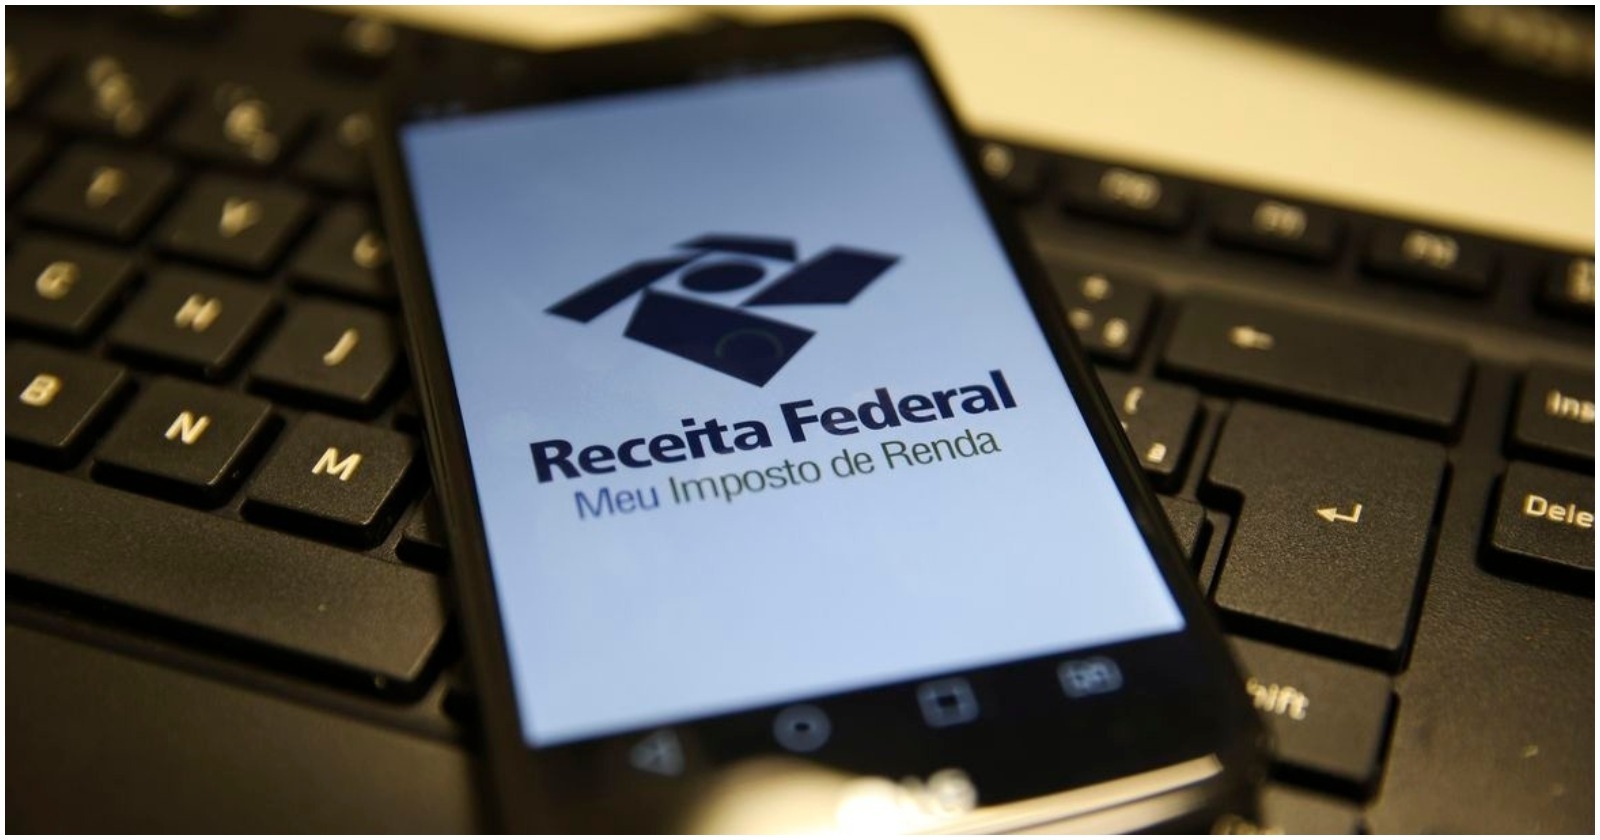 Trabalhadores podem usar o celular para ter acesso a informações da Receita Federal